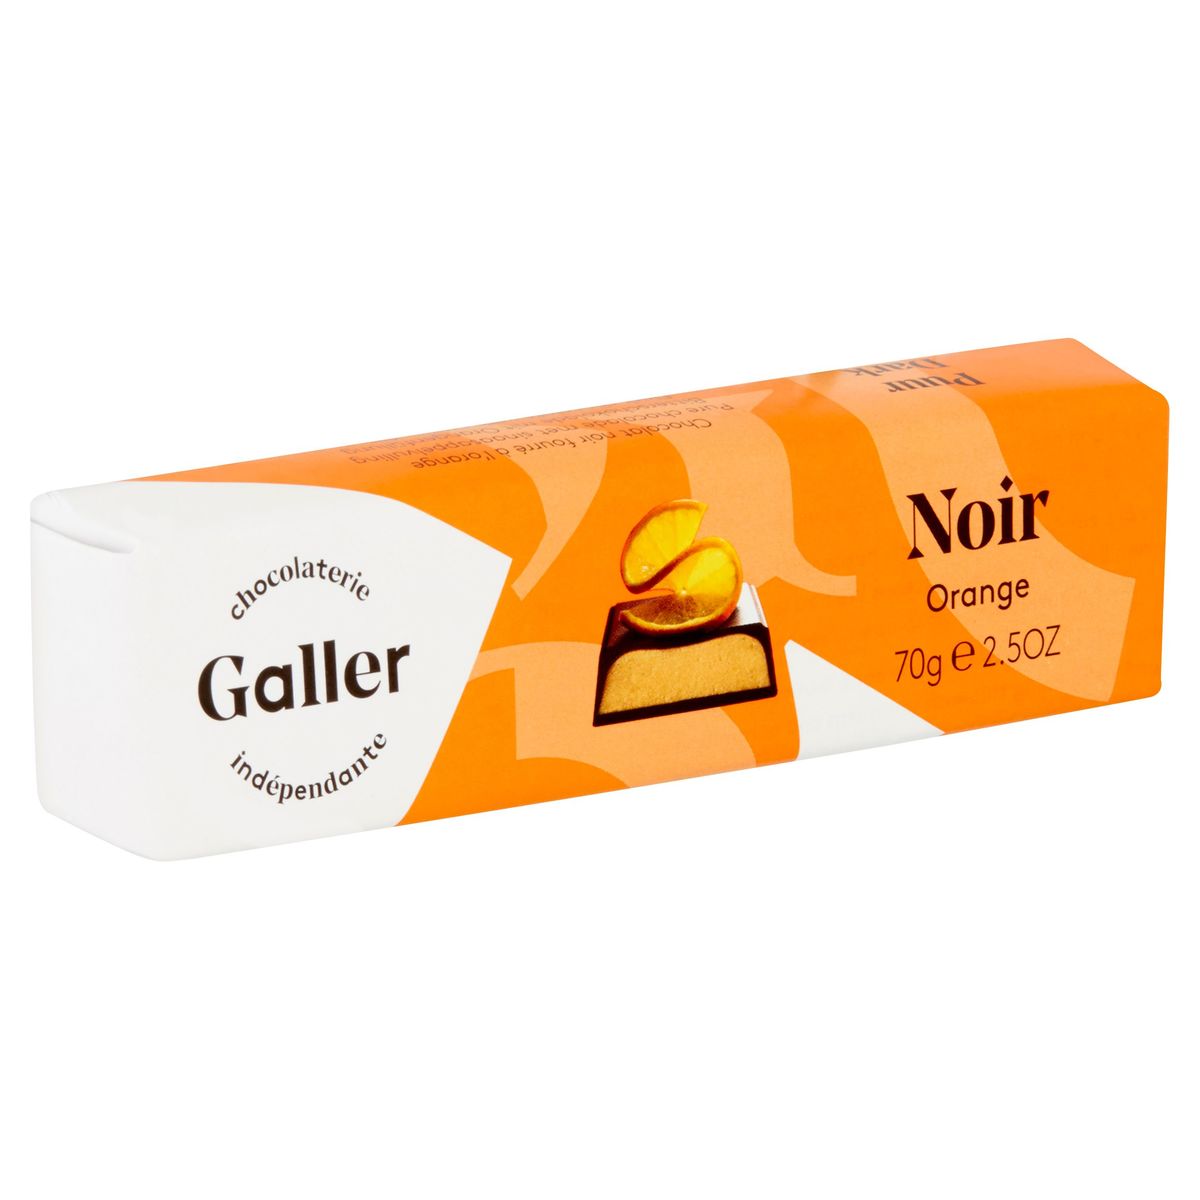 Galler Noir Orange 70 g